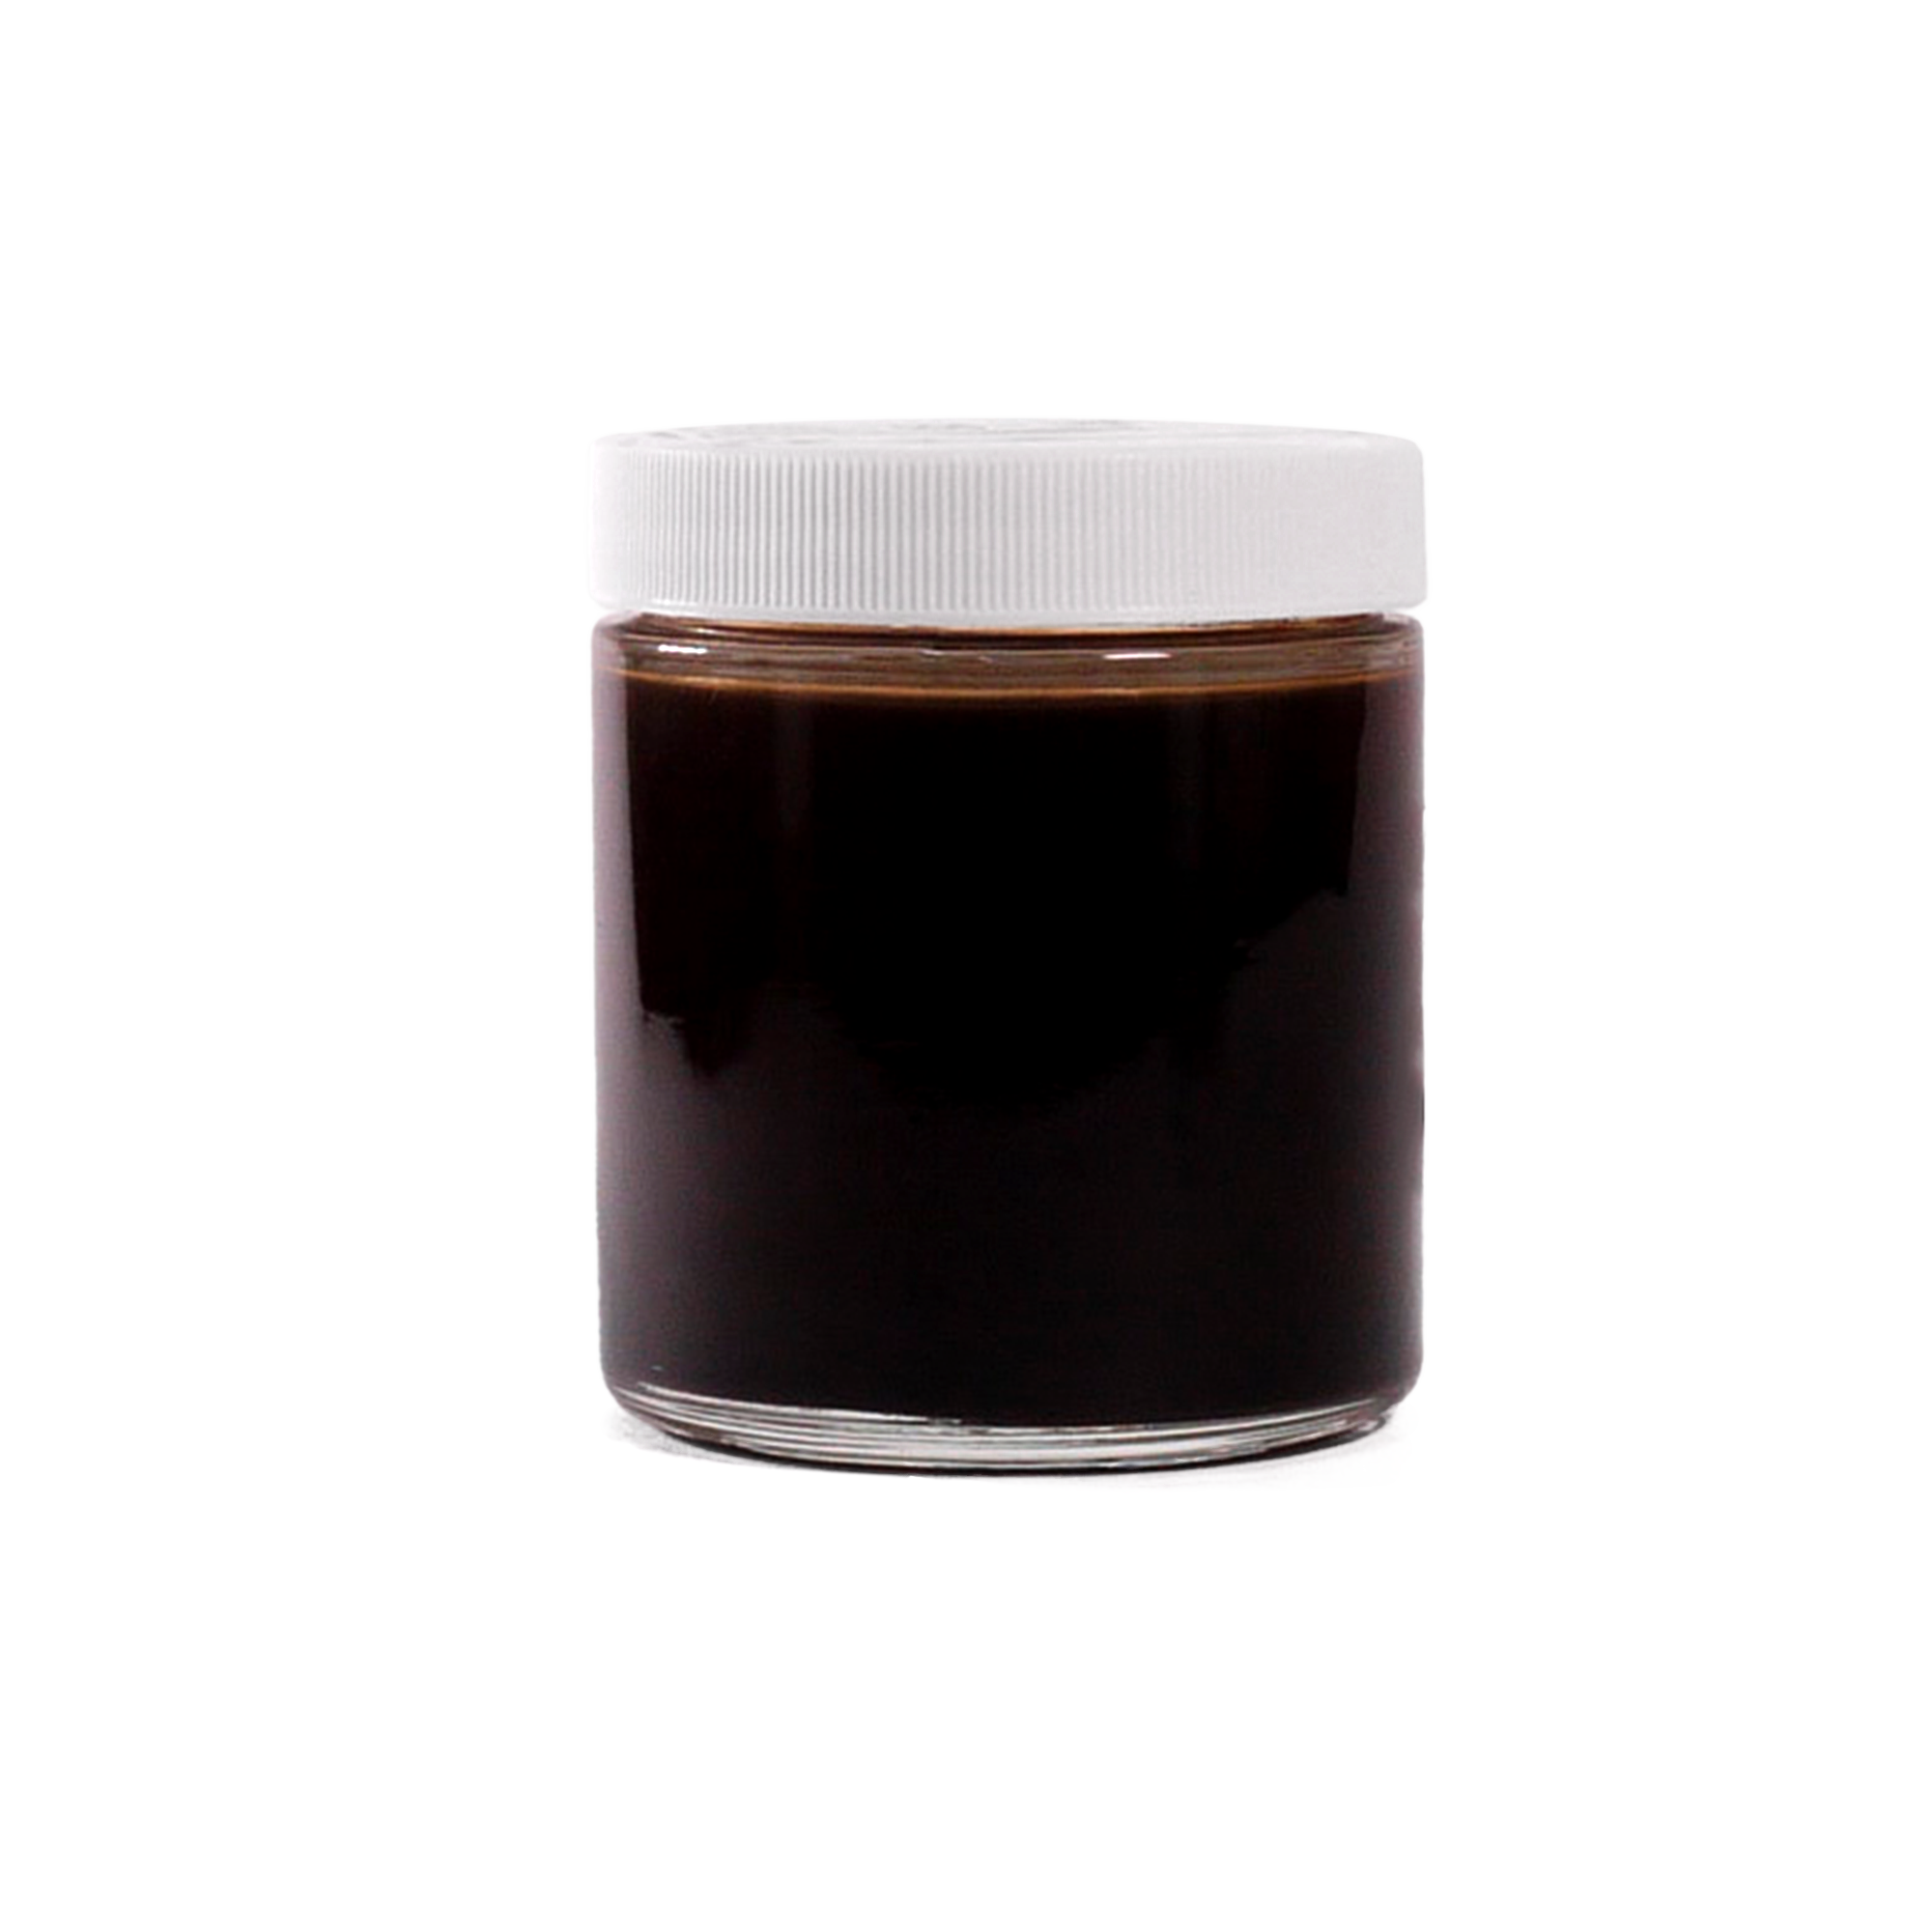 Orb-3 dark brown liquid in jar HP800